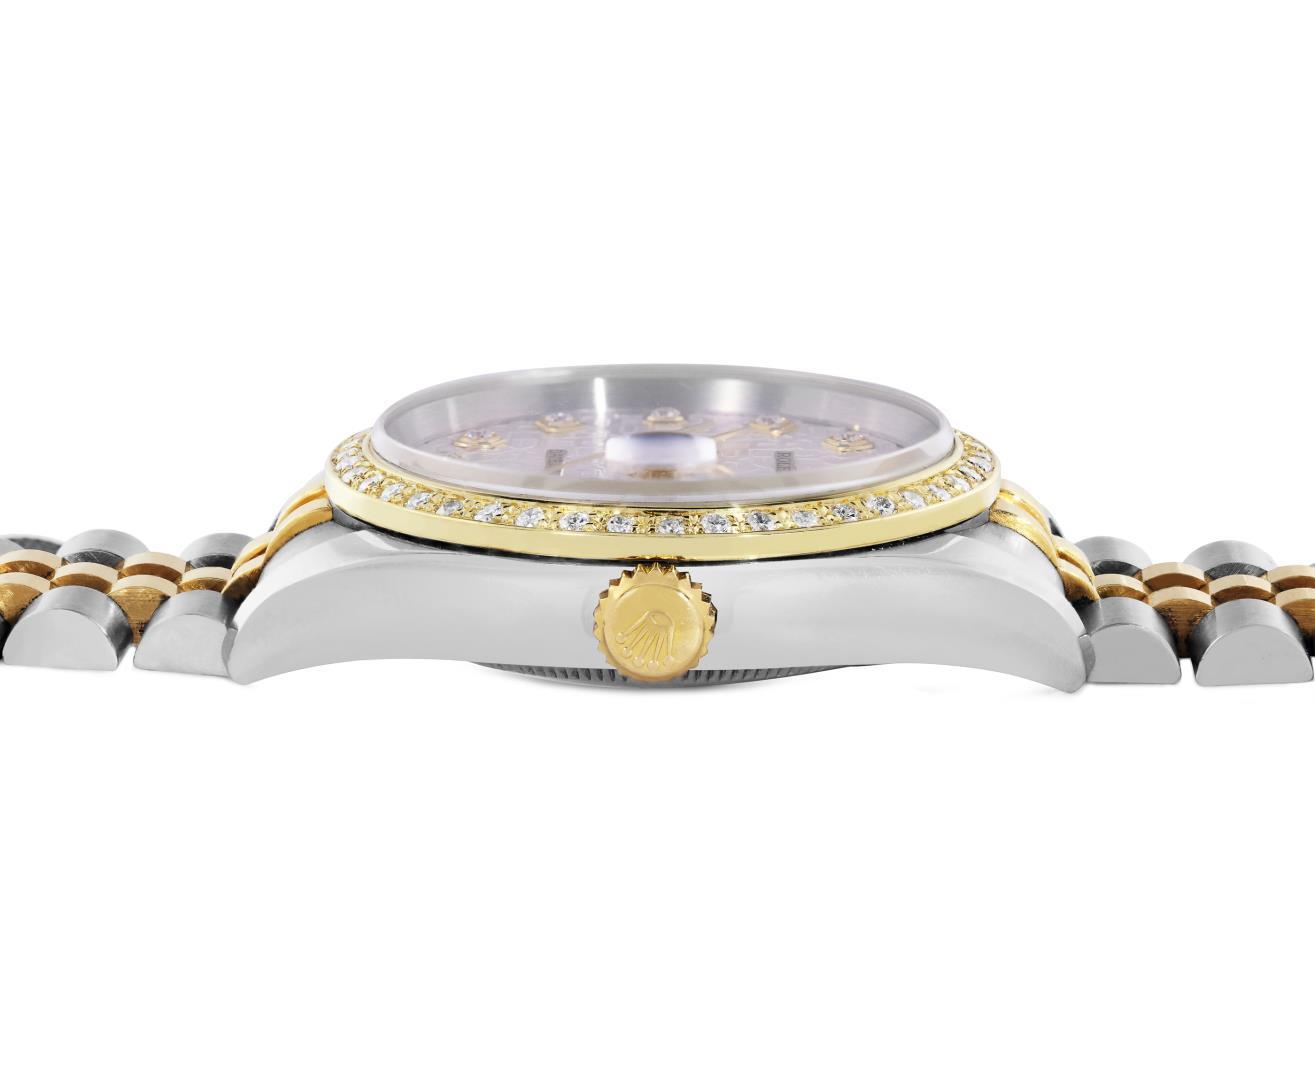 Rolex Men's Two Tone Diamond Datejust Wristwatch